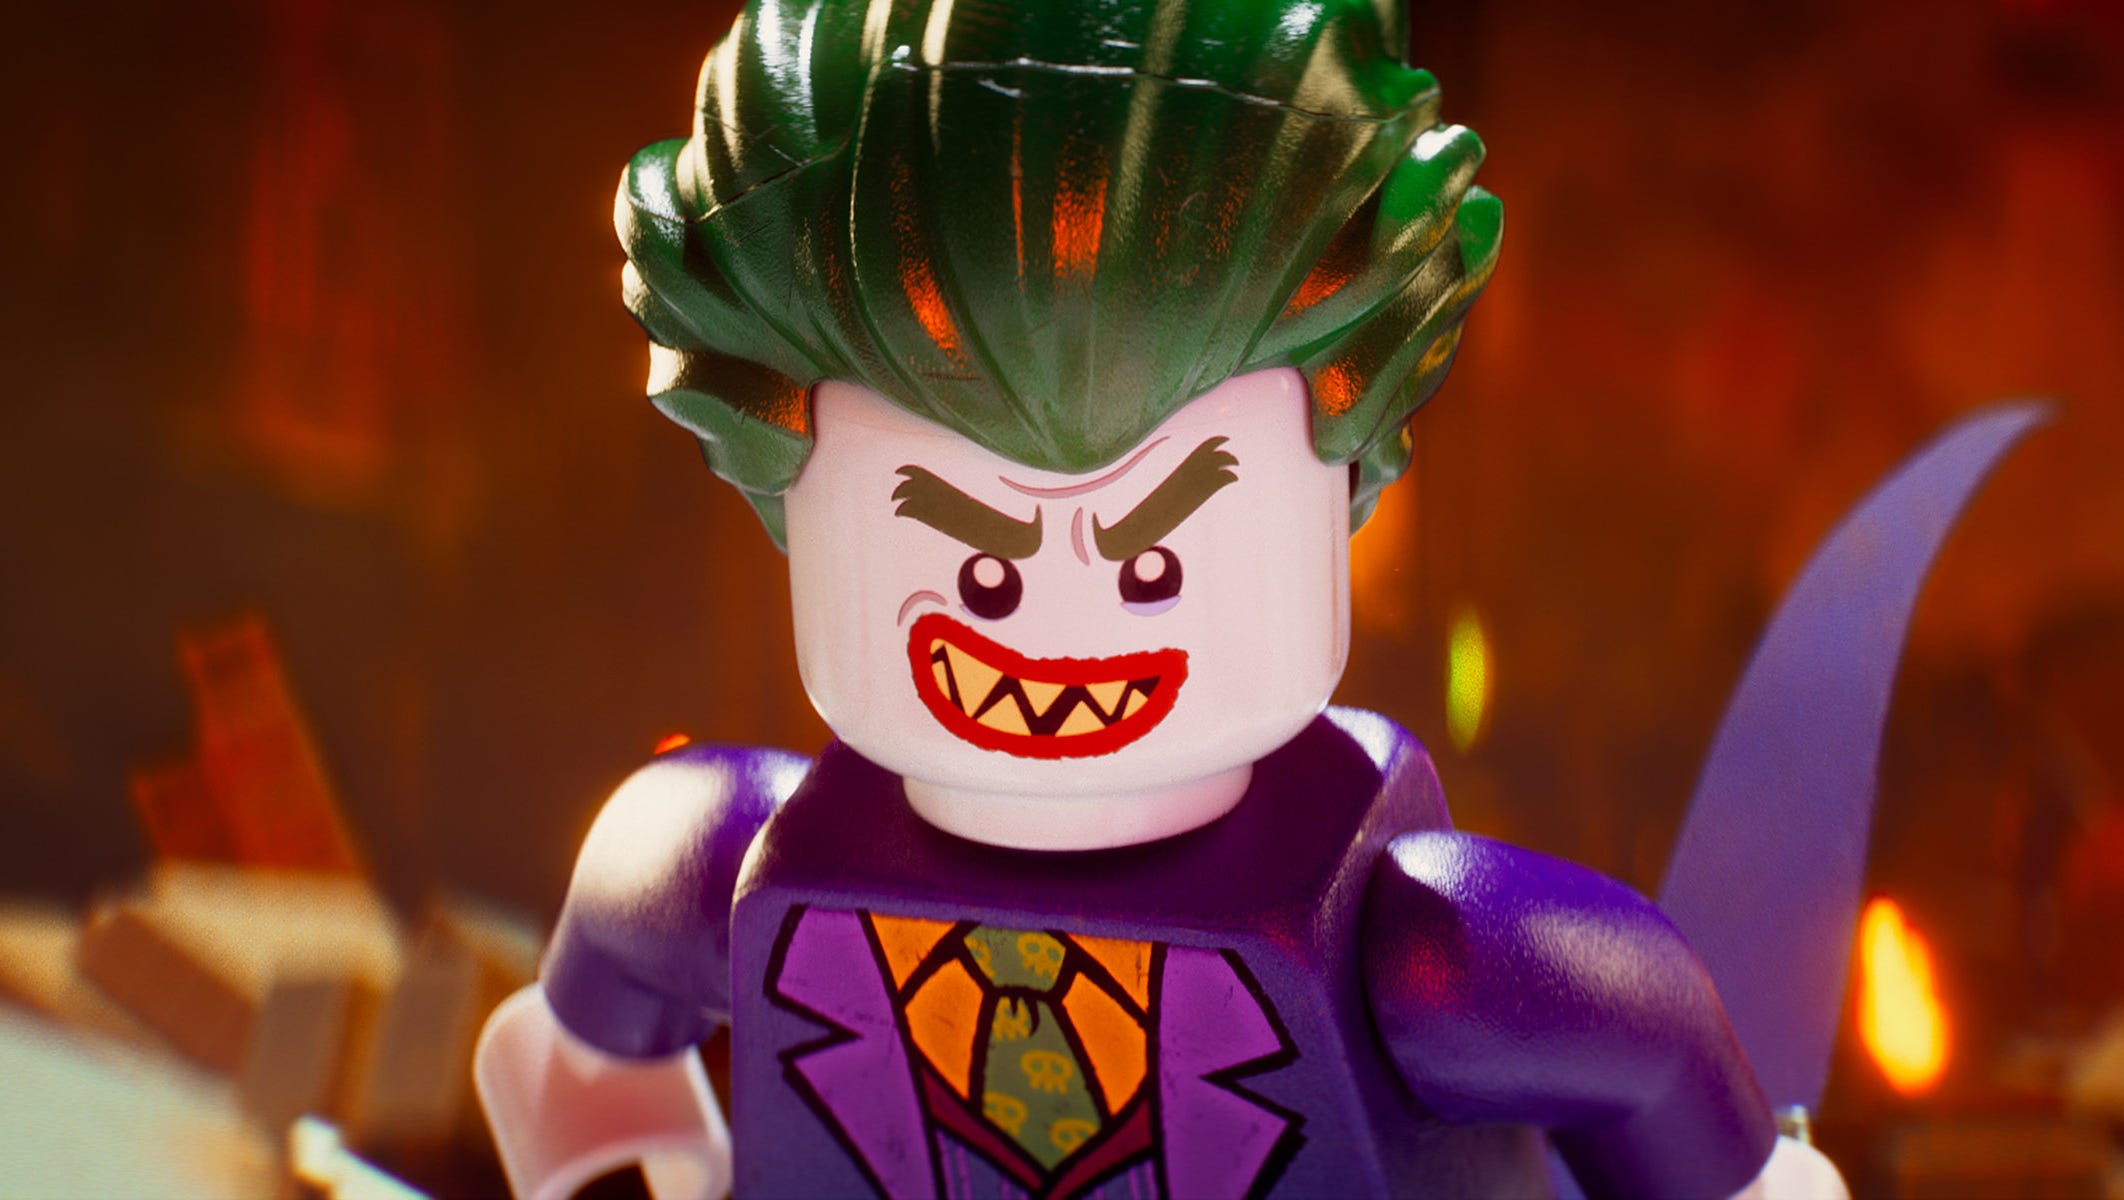 Schuldenaar Extra Ijveraar Sneak peek: 'Lego Batman Movie' reveals Joker, Robin